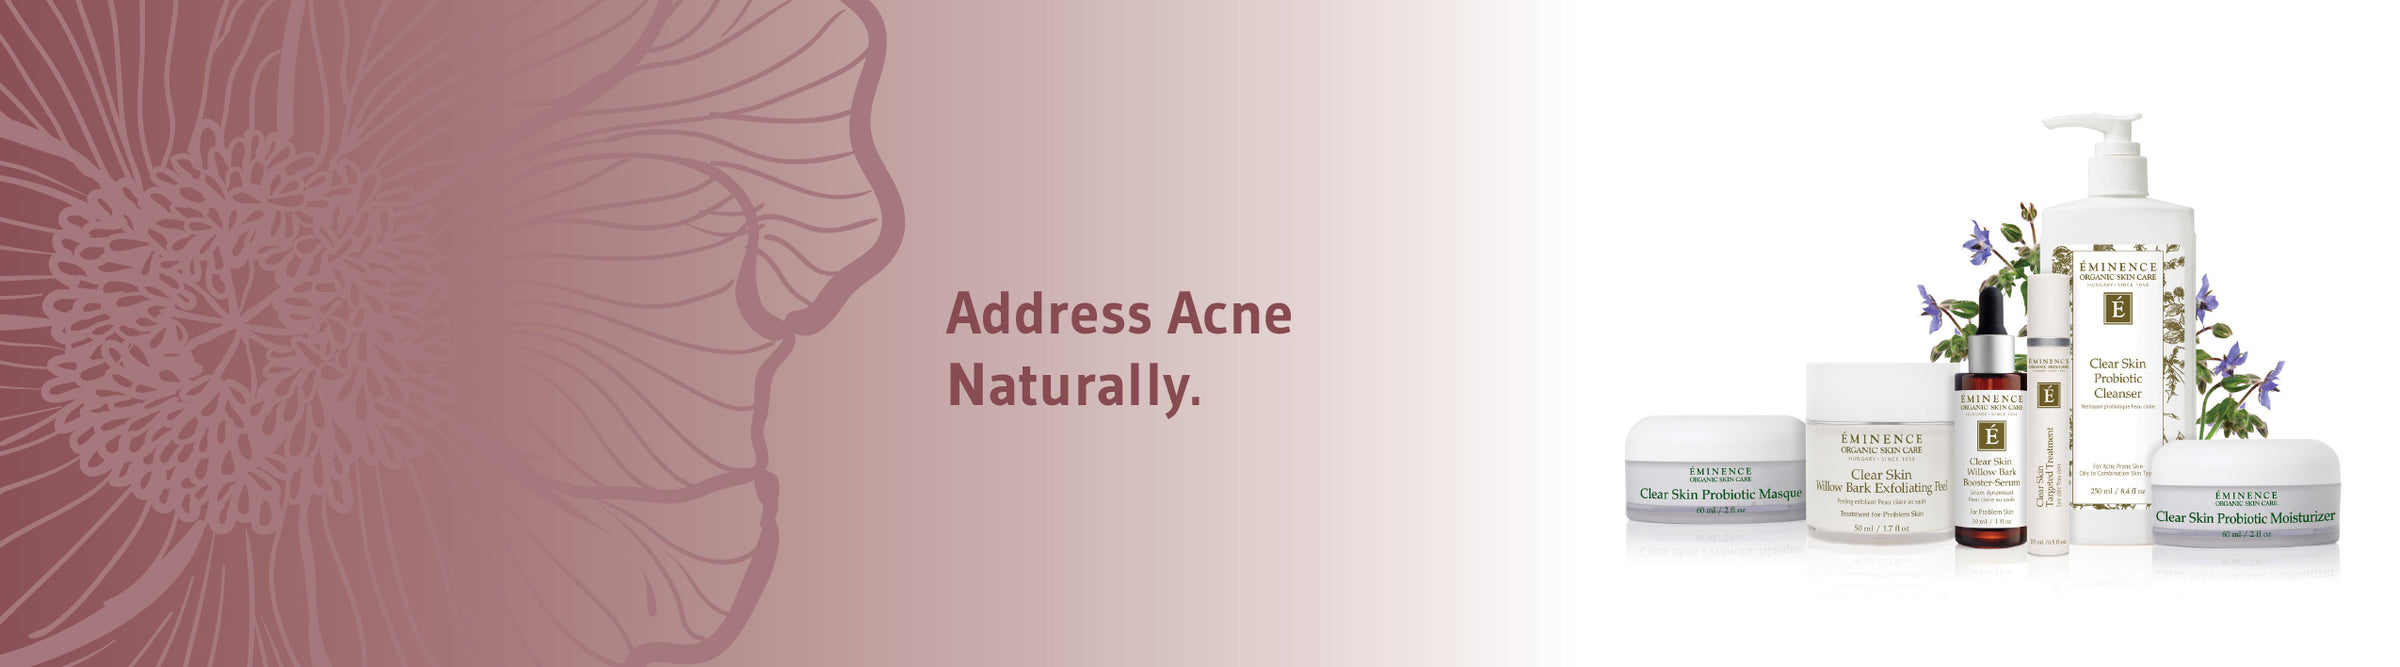 Eminence Organics - Clear Skin VitaSkin